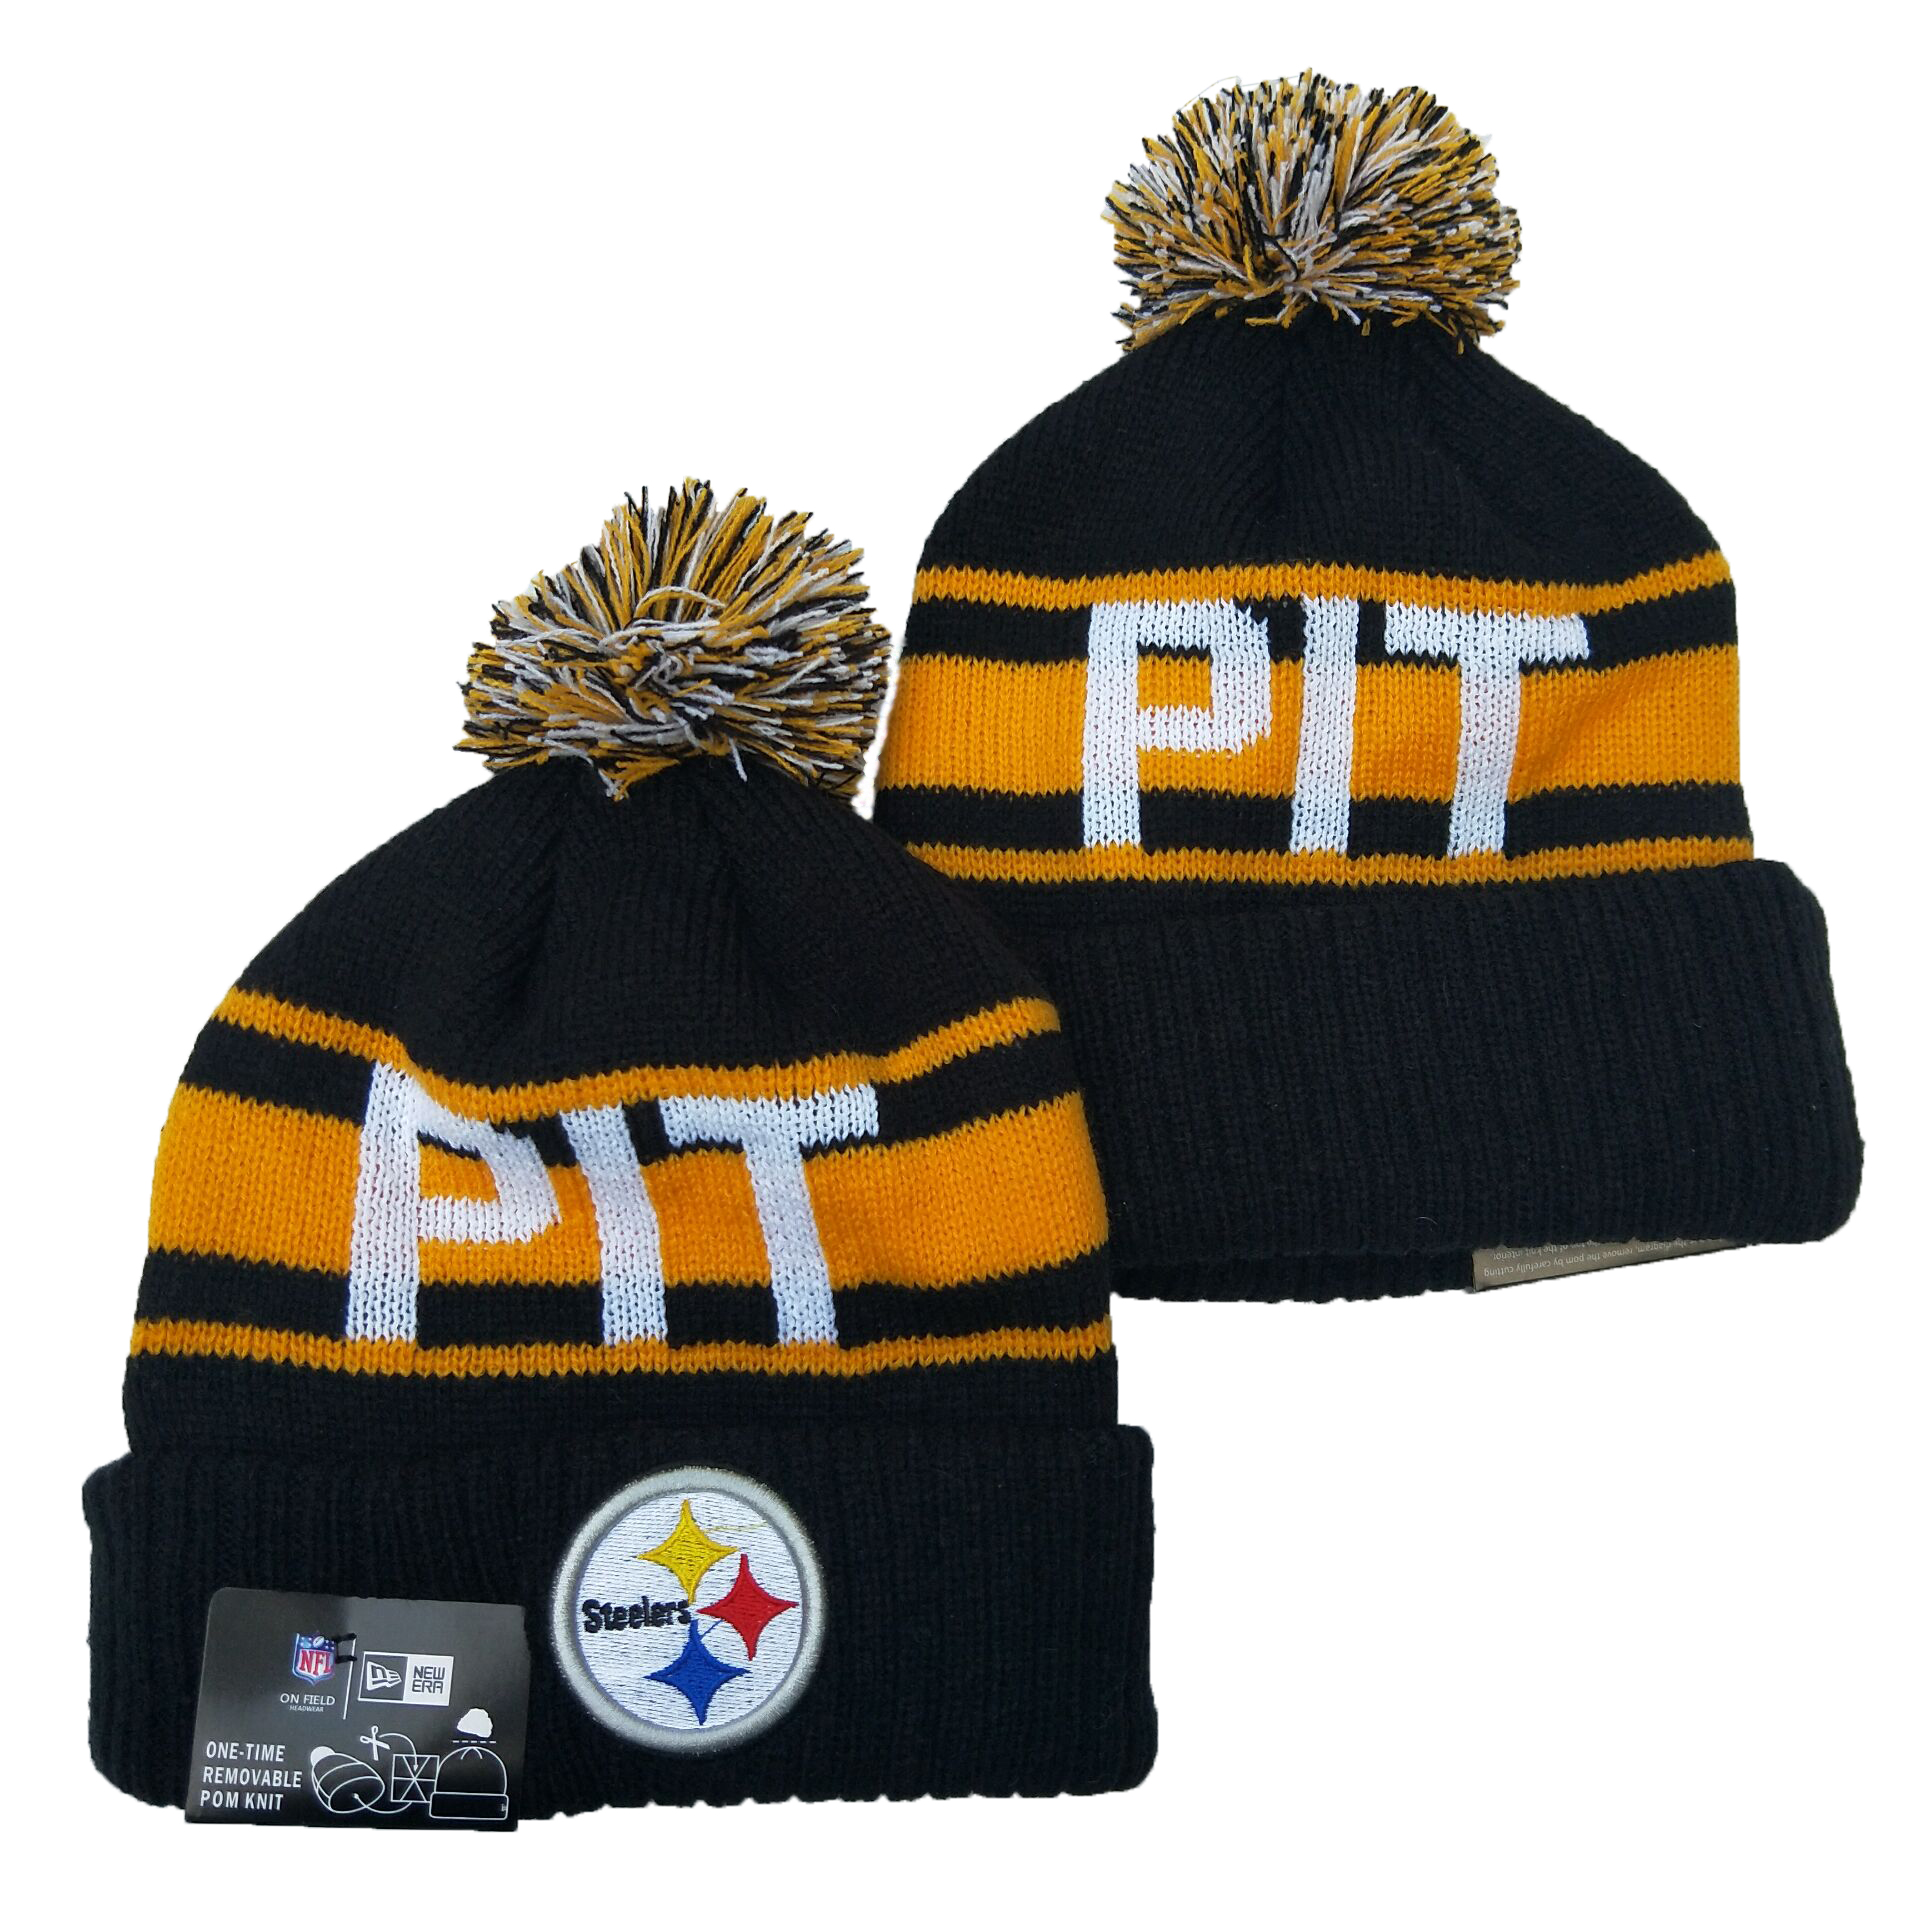 Steelers Team Logo Black Cuffed Knit Hat YD